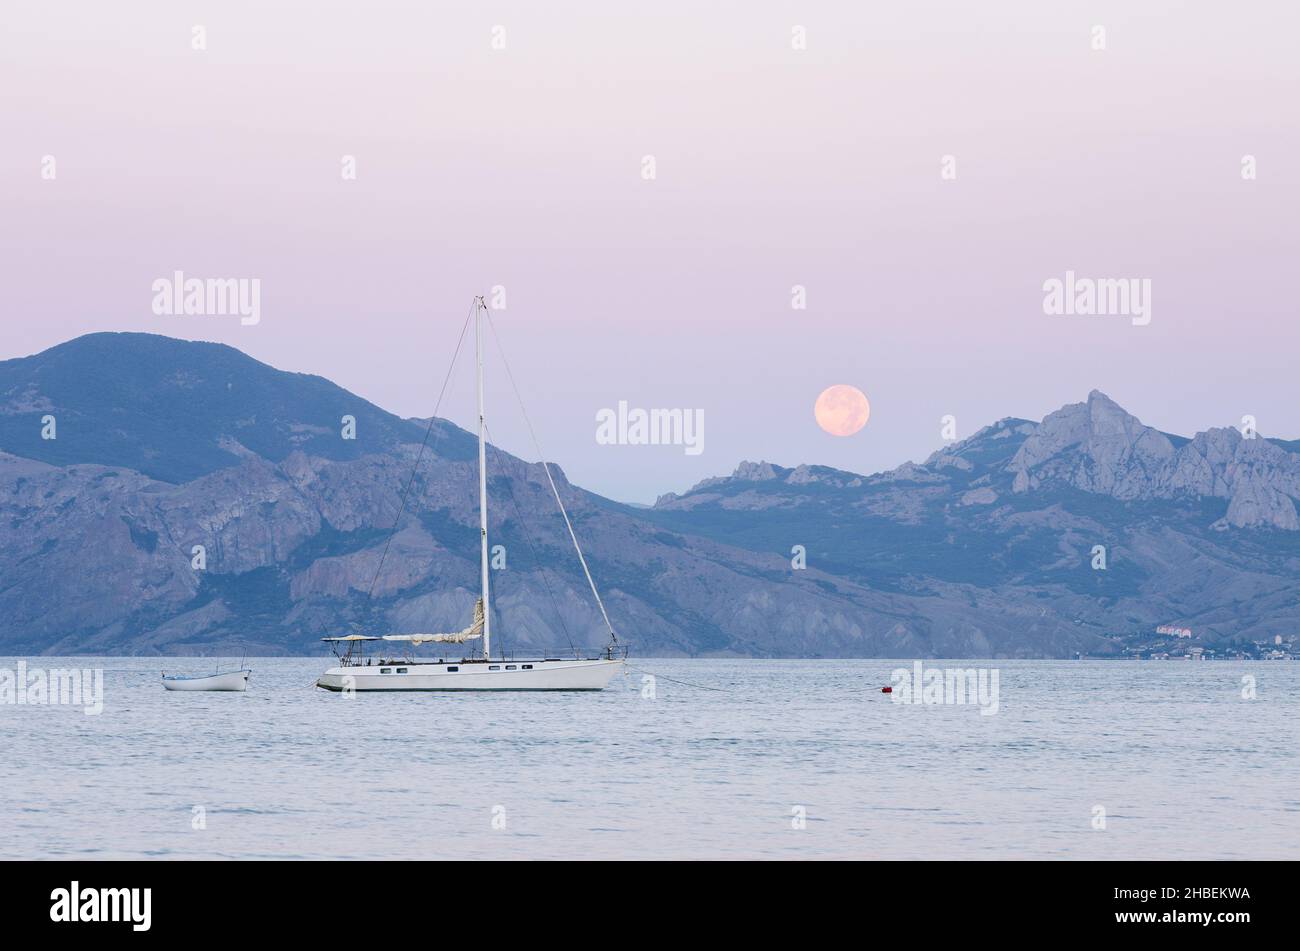 Vue sur la mer avec yacht à voile.Pleine lune sur la crête.Paysage d'été au crépuscule près de la ville de la station Banque D'Images